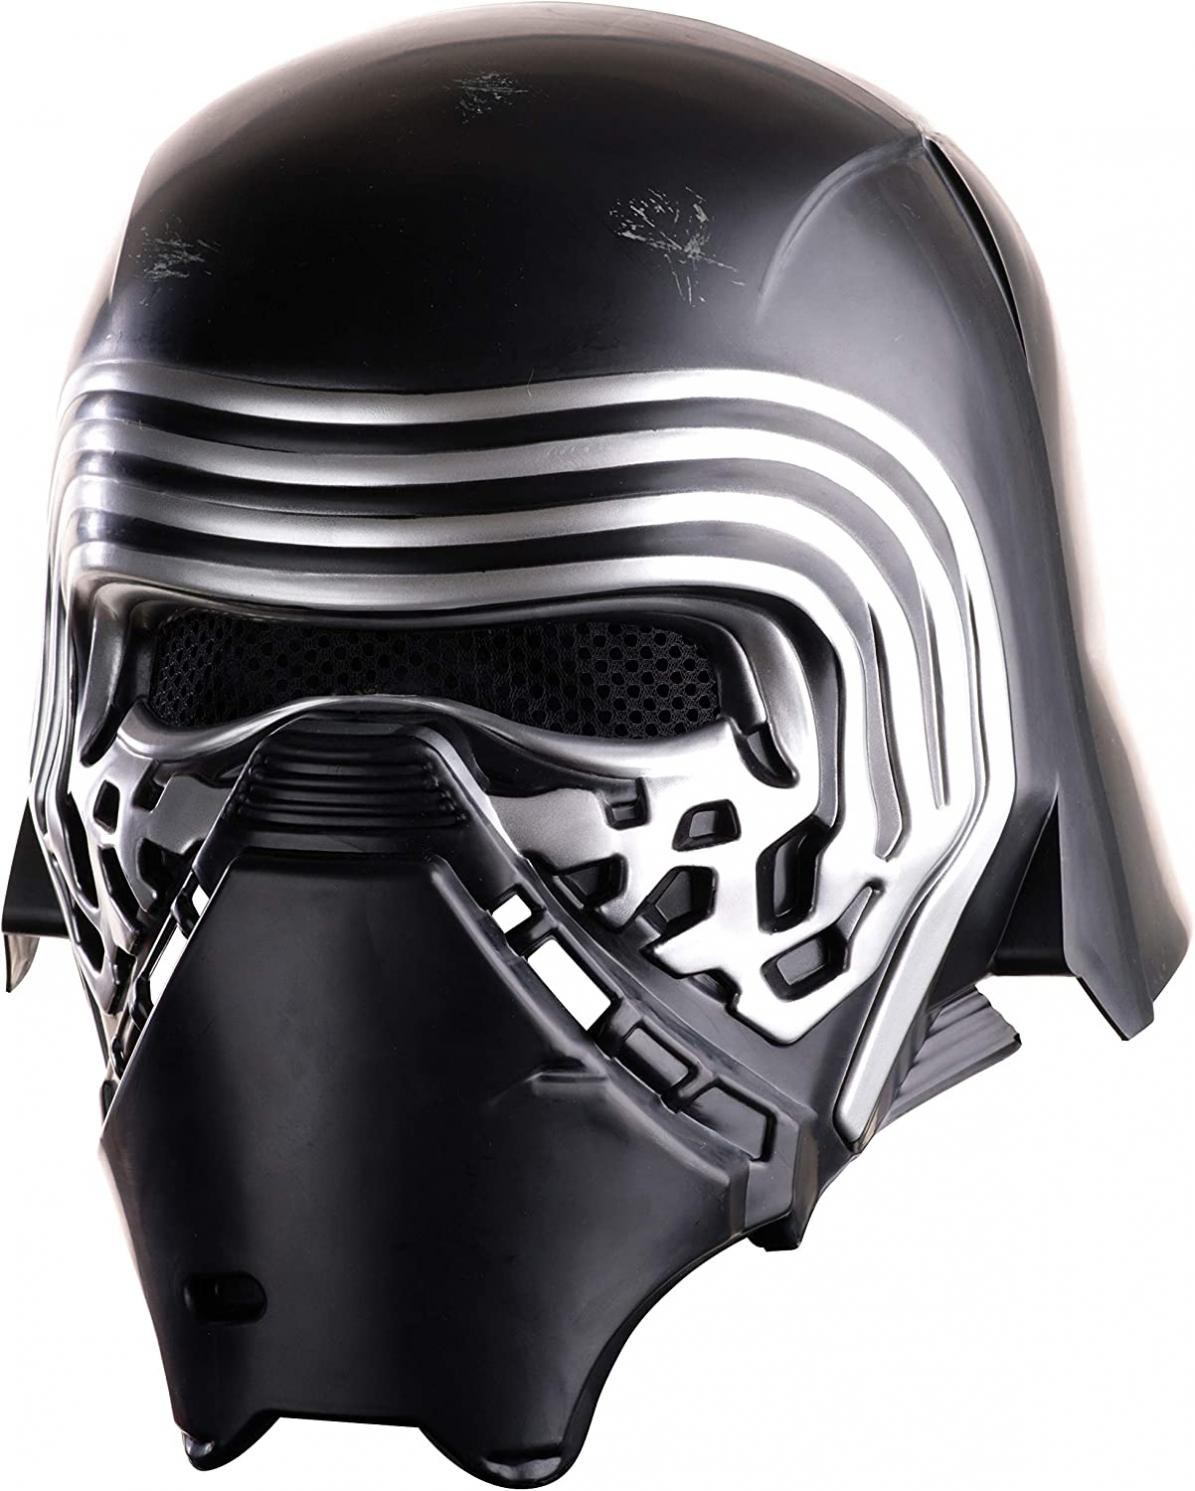 Star Wars: The Force Awakens Adult Kylo Ren 2-Piece Helmet